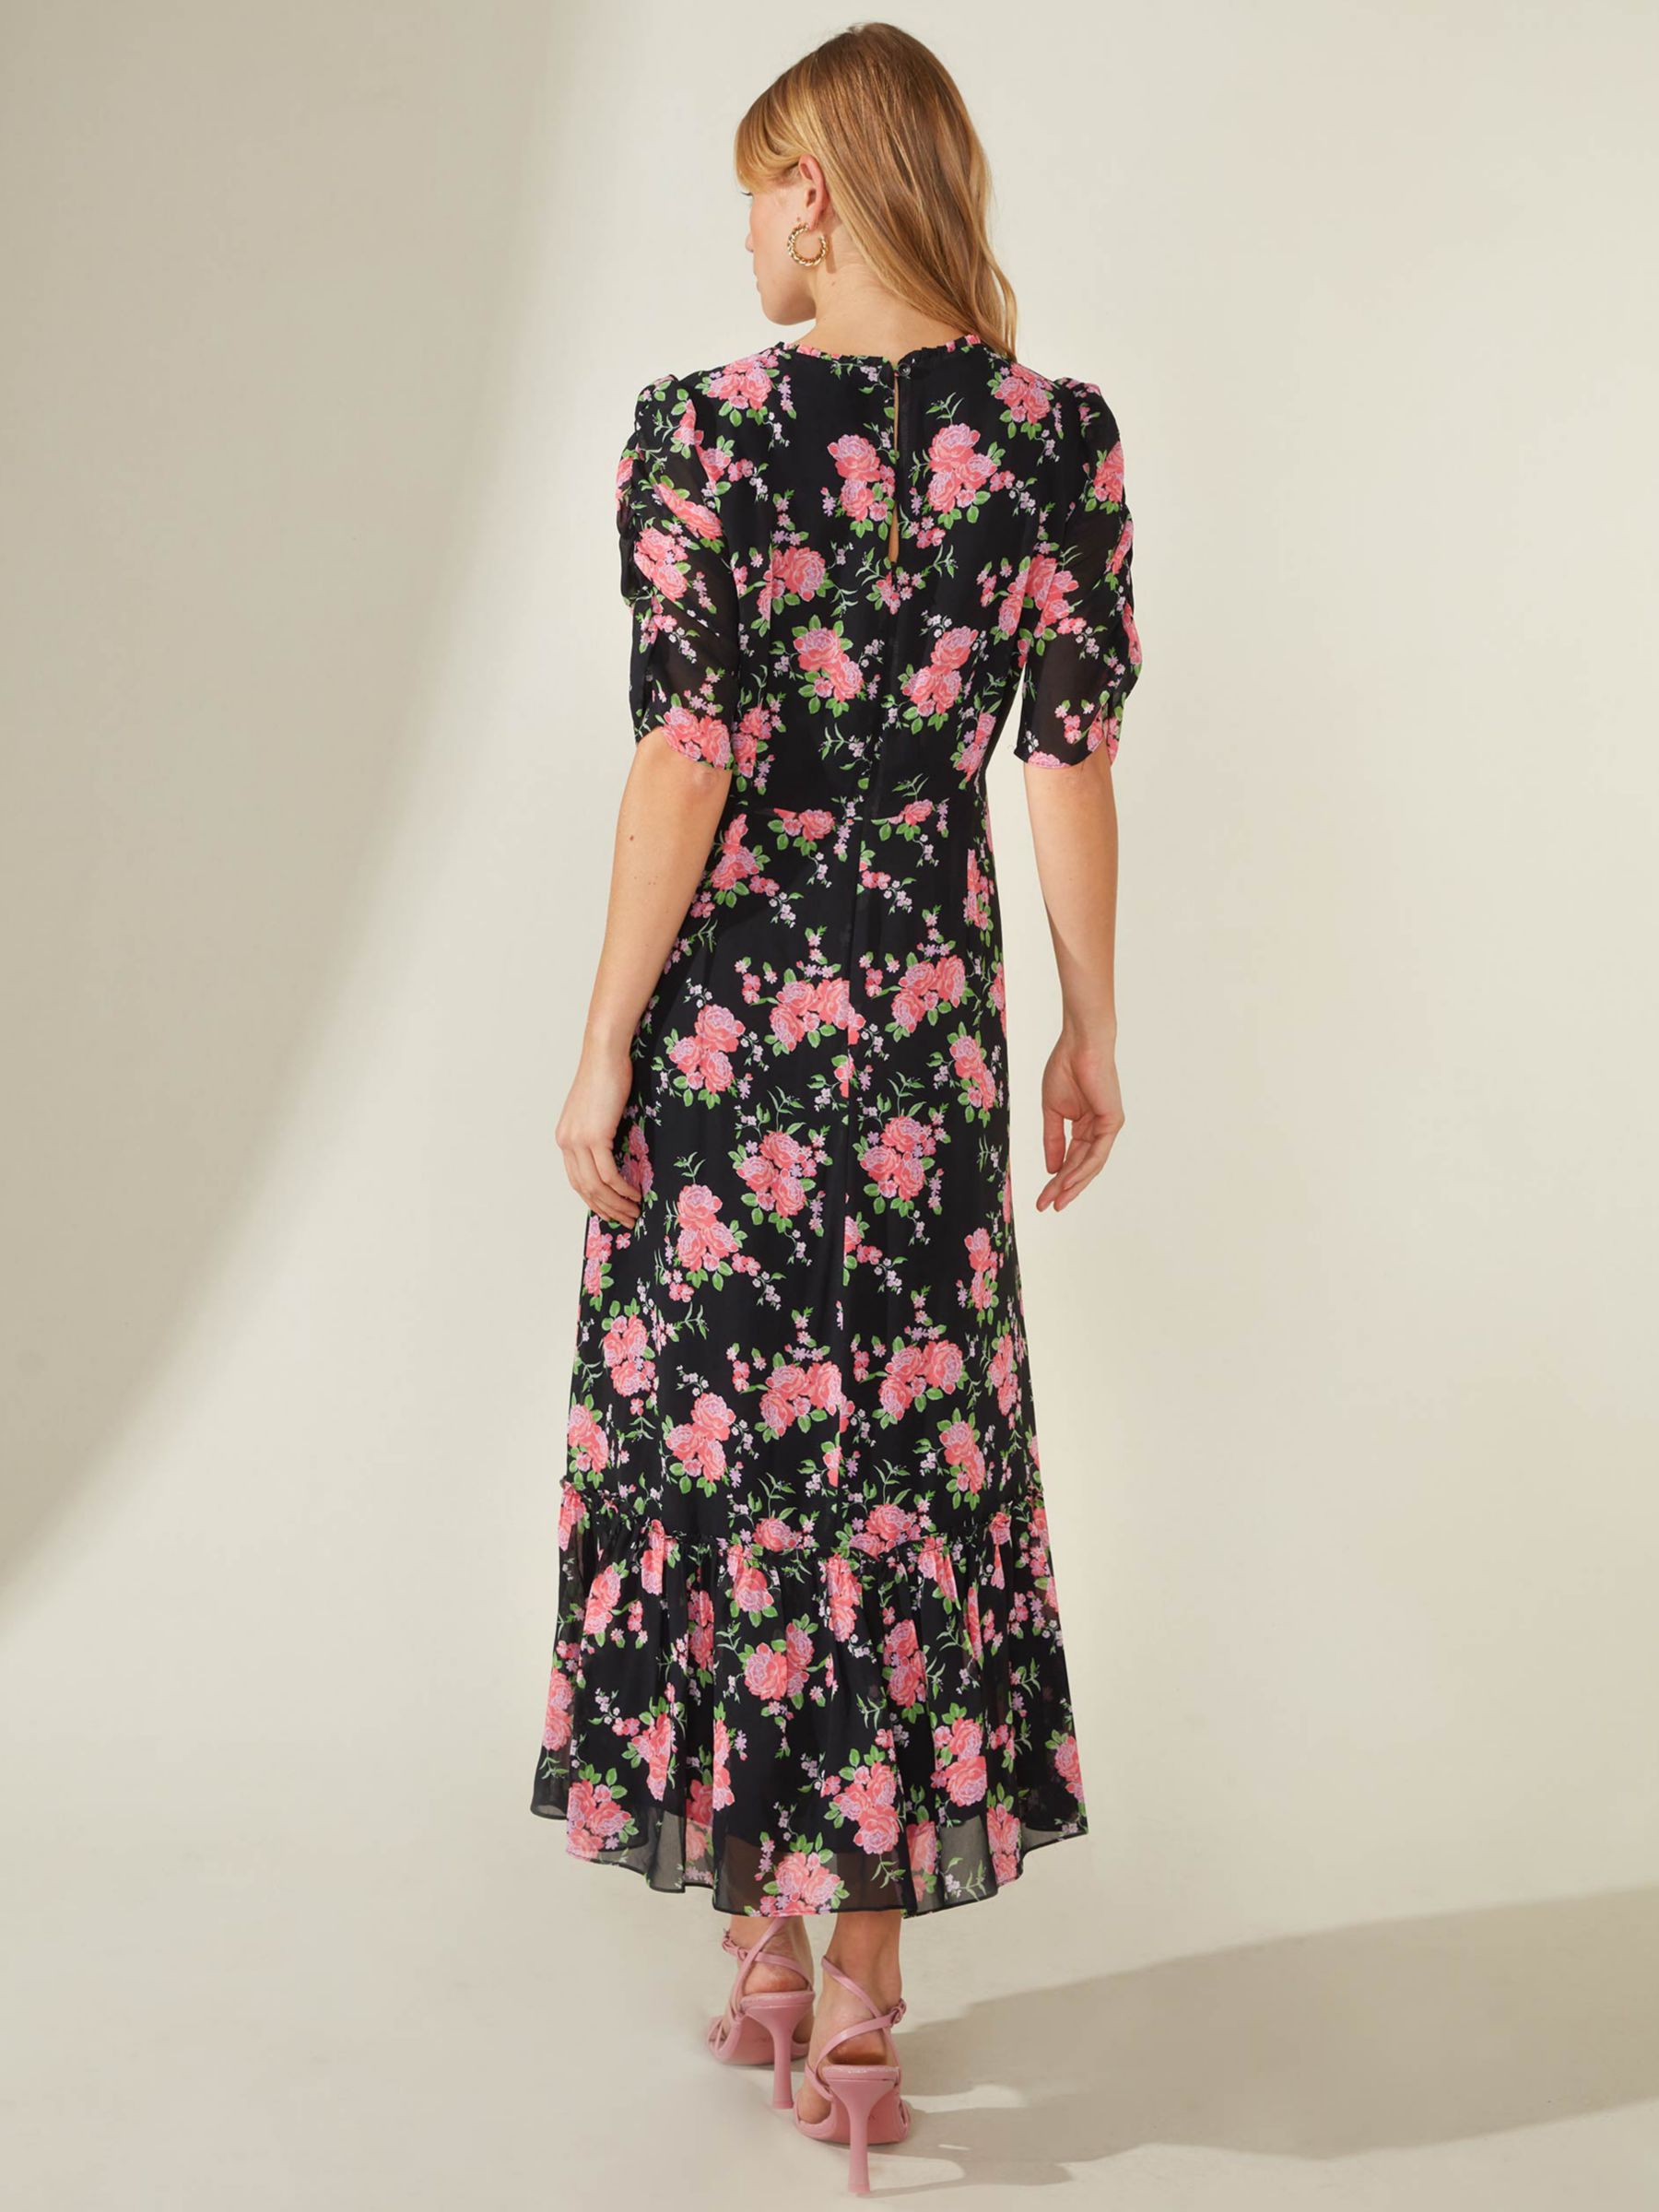 Ro&Zo Floral Frill Neck Midi Dress, Black/Multi at John Lewis & Partners